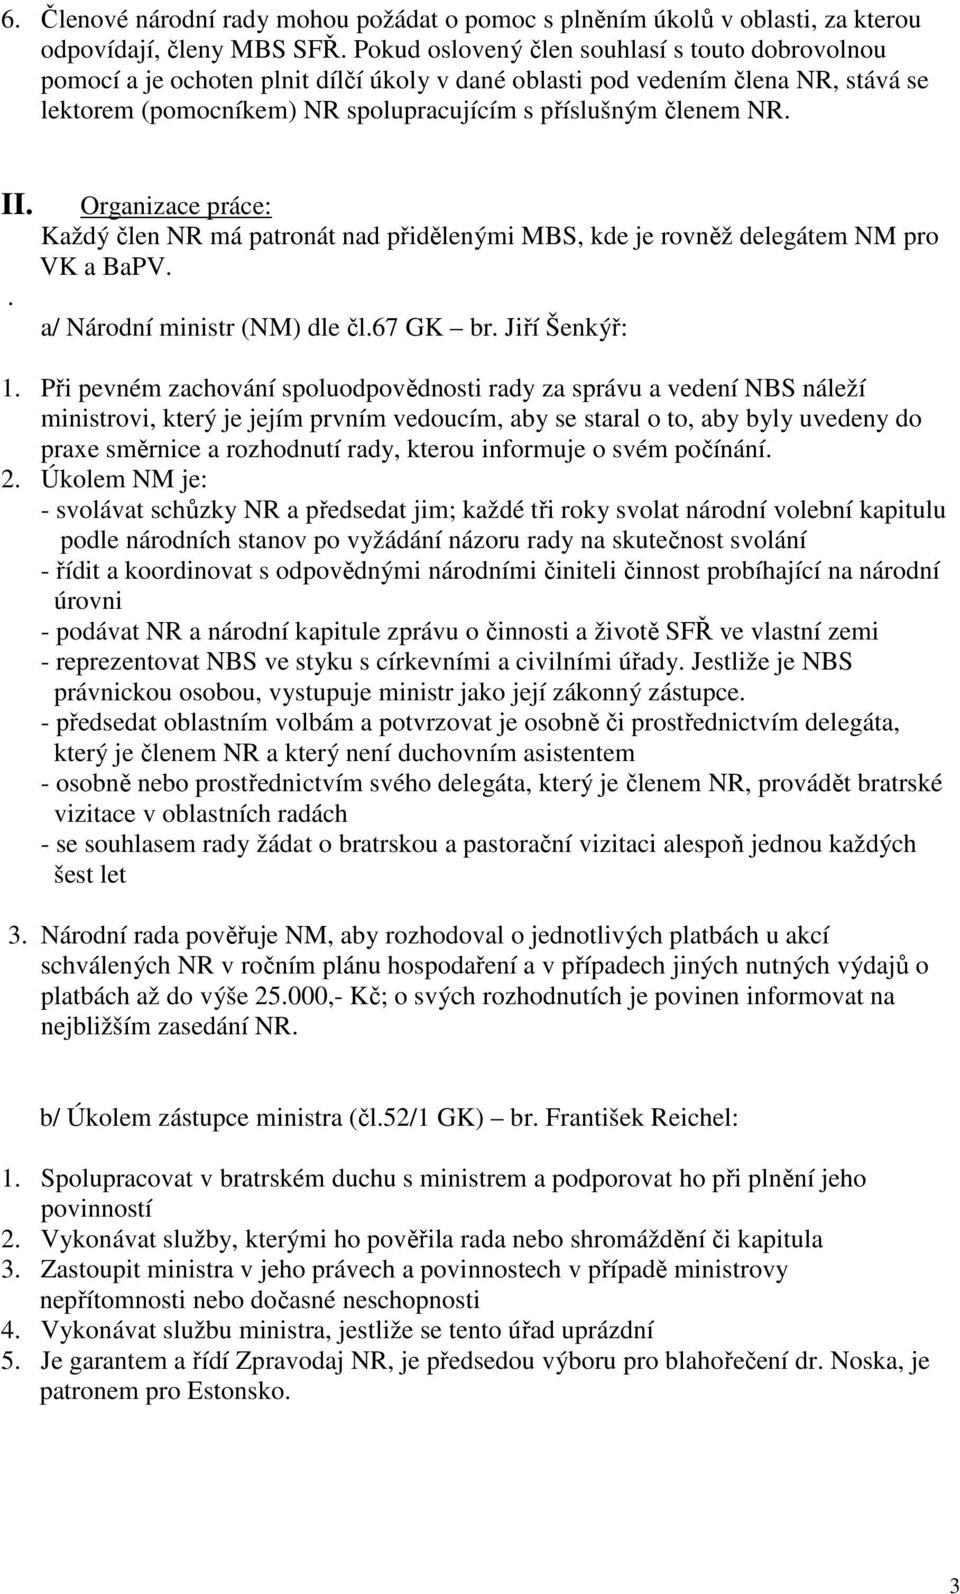 II.. Organizace práce: Každý člen NR má patronát nad přidělenými MBS, kde je rovněž delegátem NM pro VK a BaPV. a/ Národní ministr (NM) dle čl.67 GK br. Jiří Šenkýř: 1.